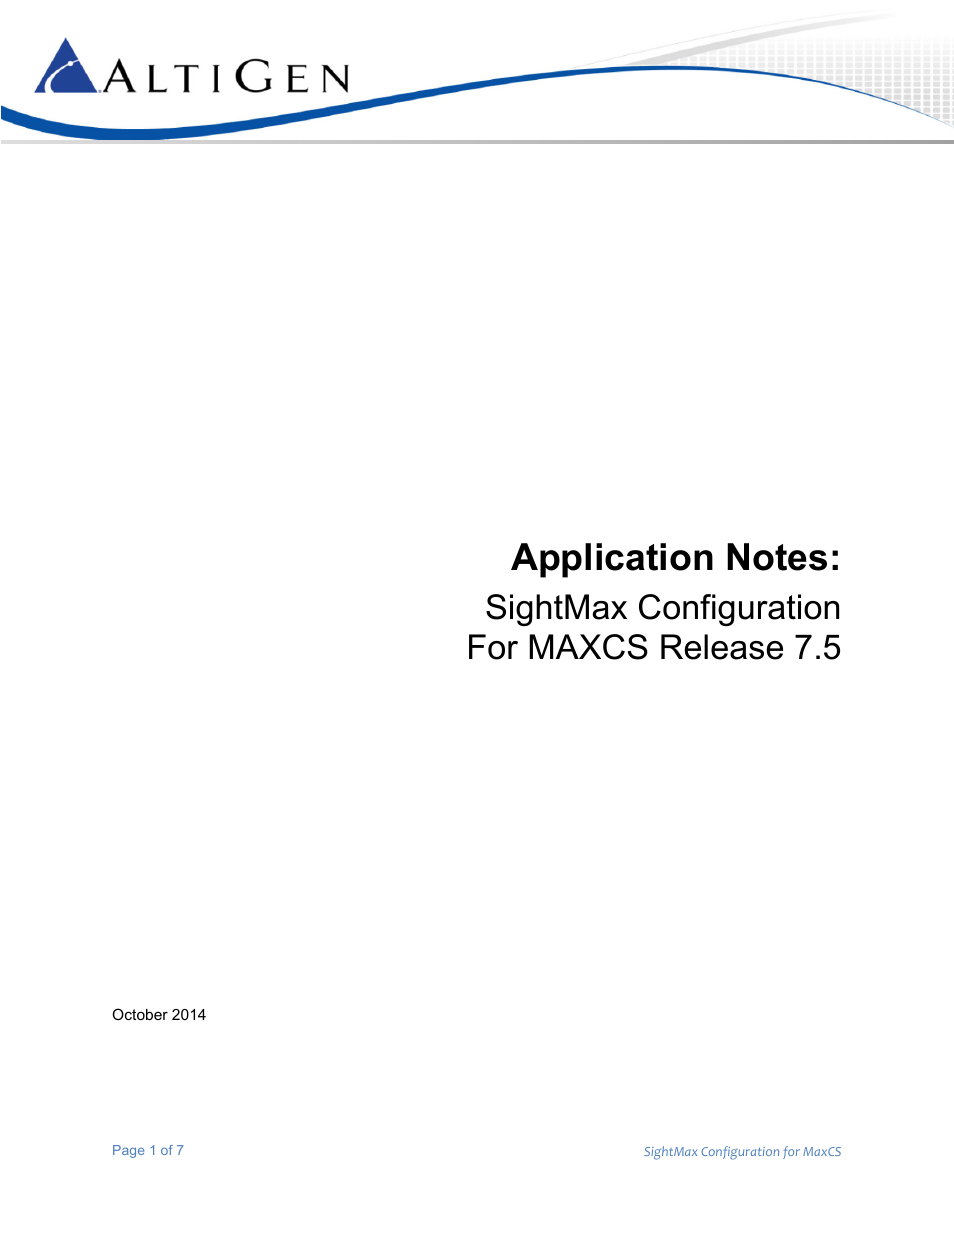 MAXCS 7.5 SightMax Configuration Guide